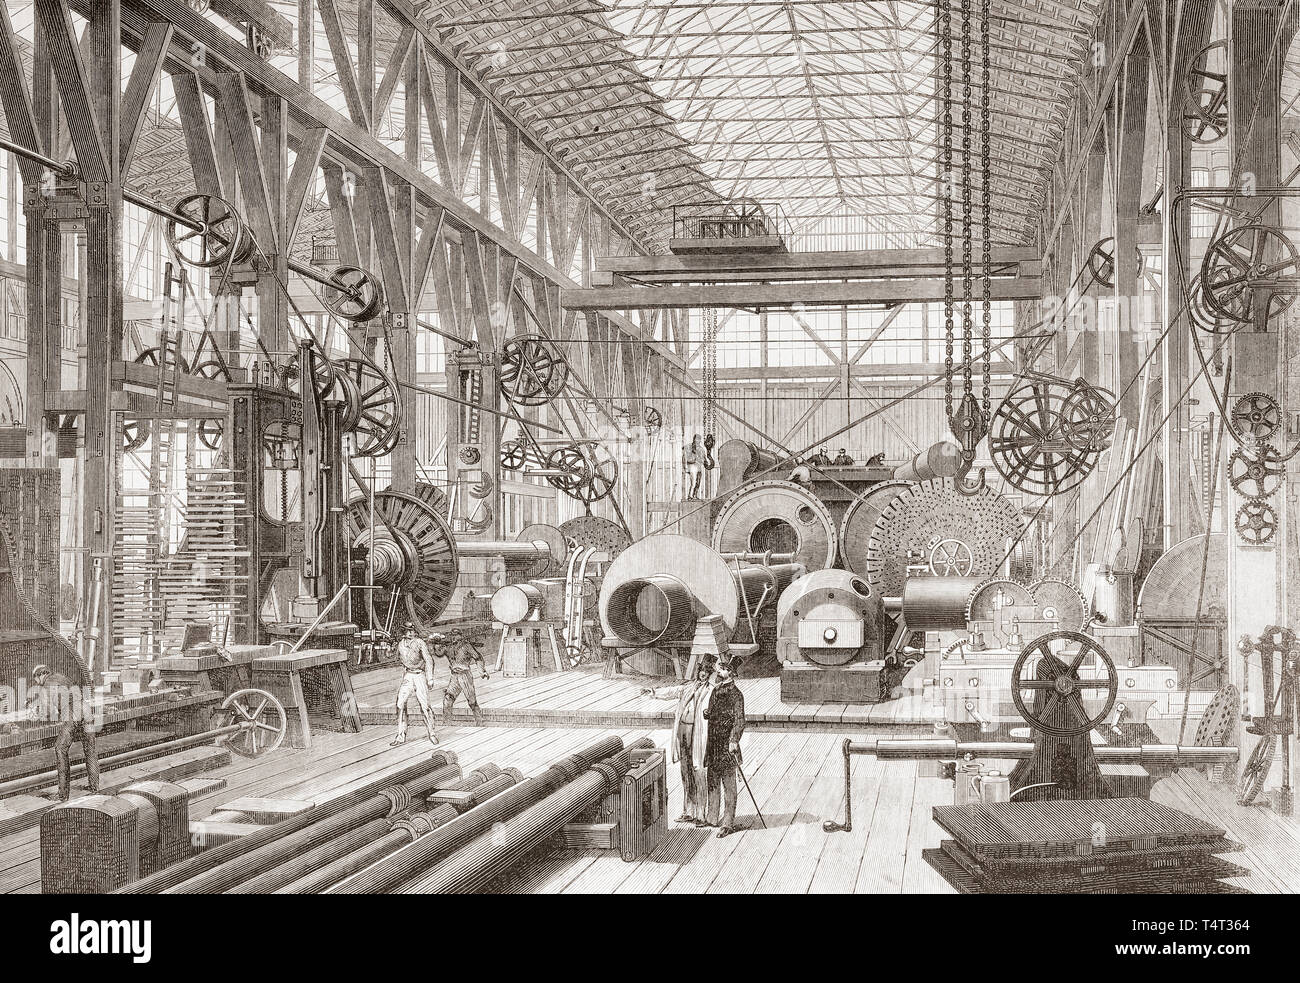 Penn's Marine Motor Factory, Greenwich, London, England, 19. Die große Maschinenhalle und dreherei. Von der Illustrated London News, veröffentlicht 1865. Stockfoto